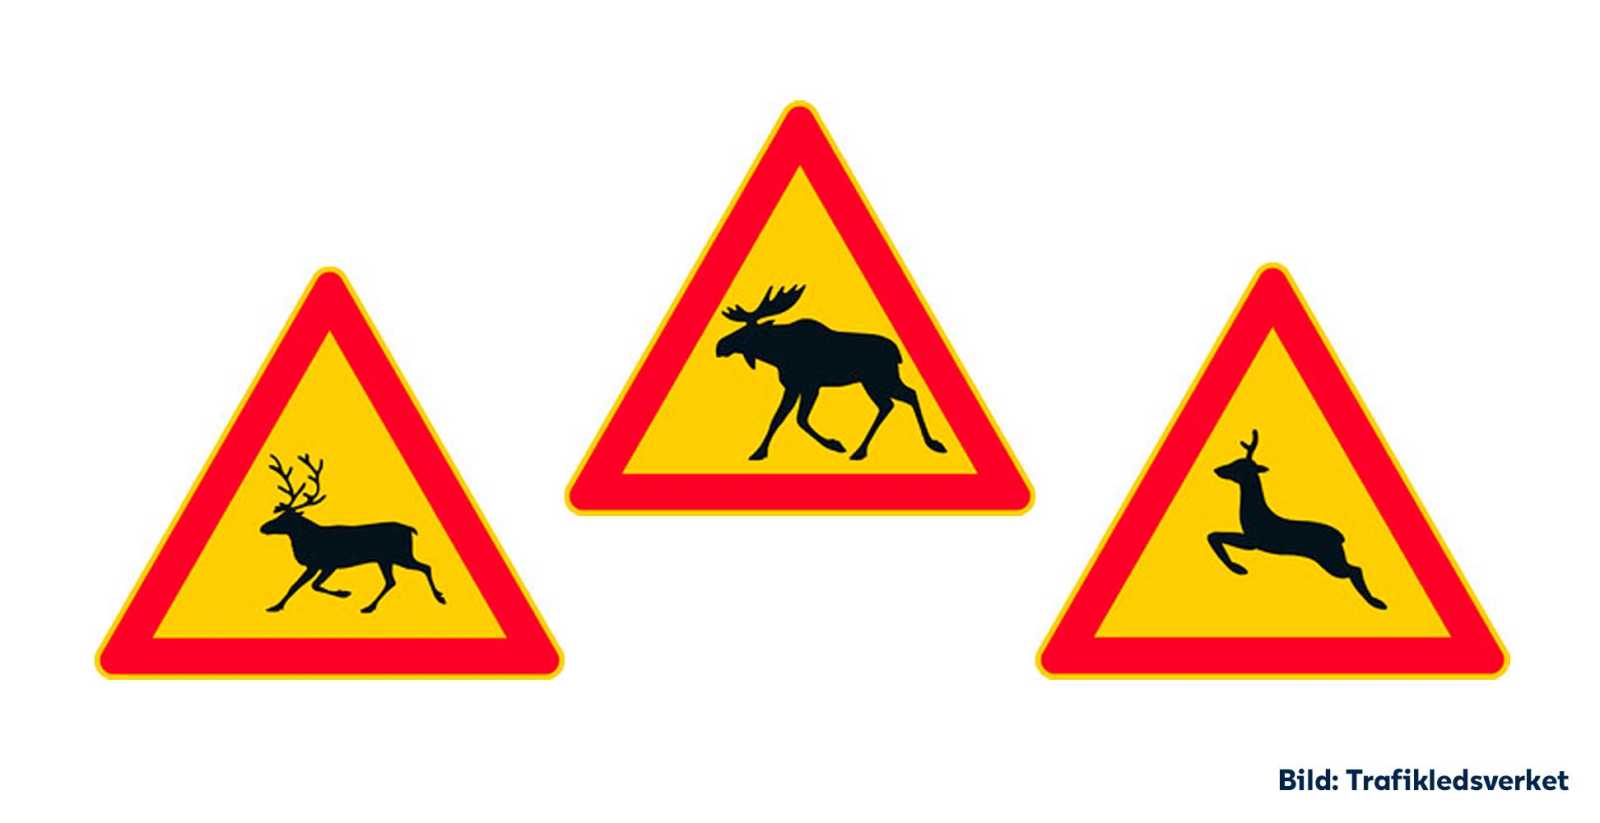 Bilden visar tre trafikmärken som varnar för hjortdjur, det vill säga märkena som varnar för älg, ren samt hjort och rådjur.